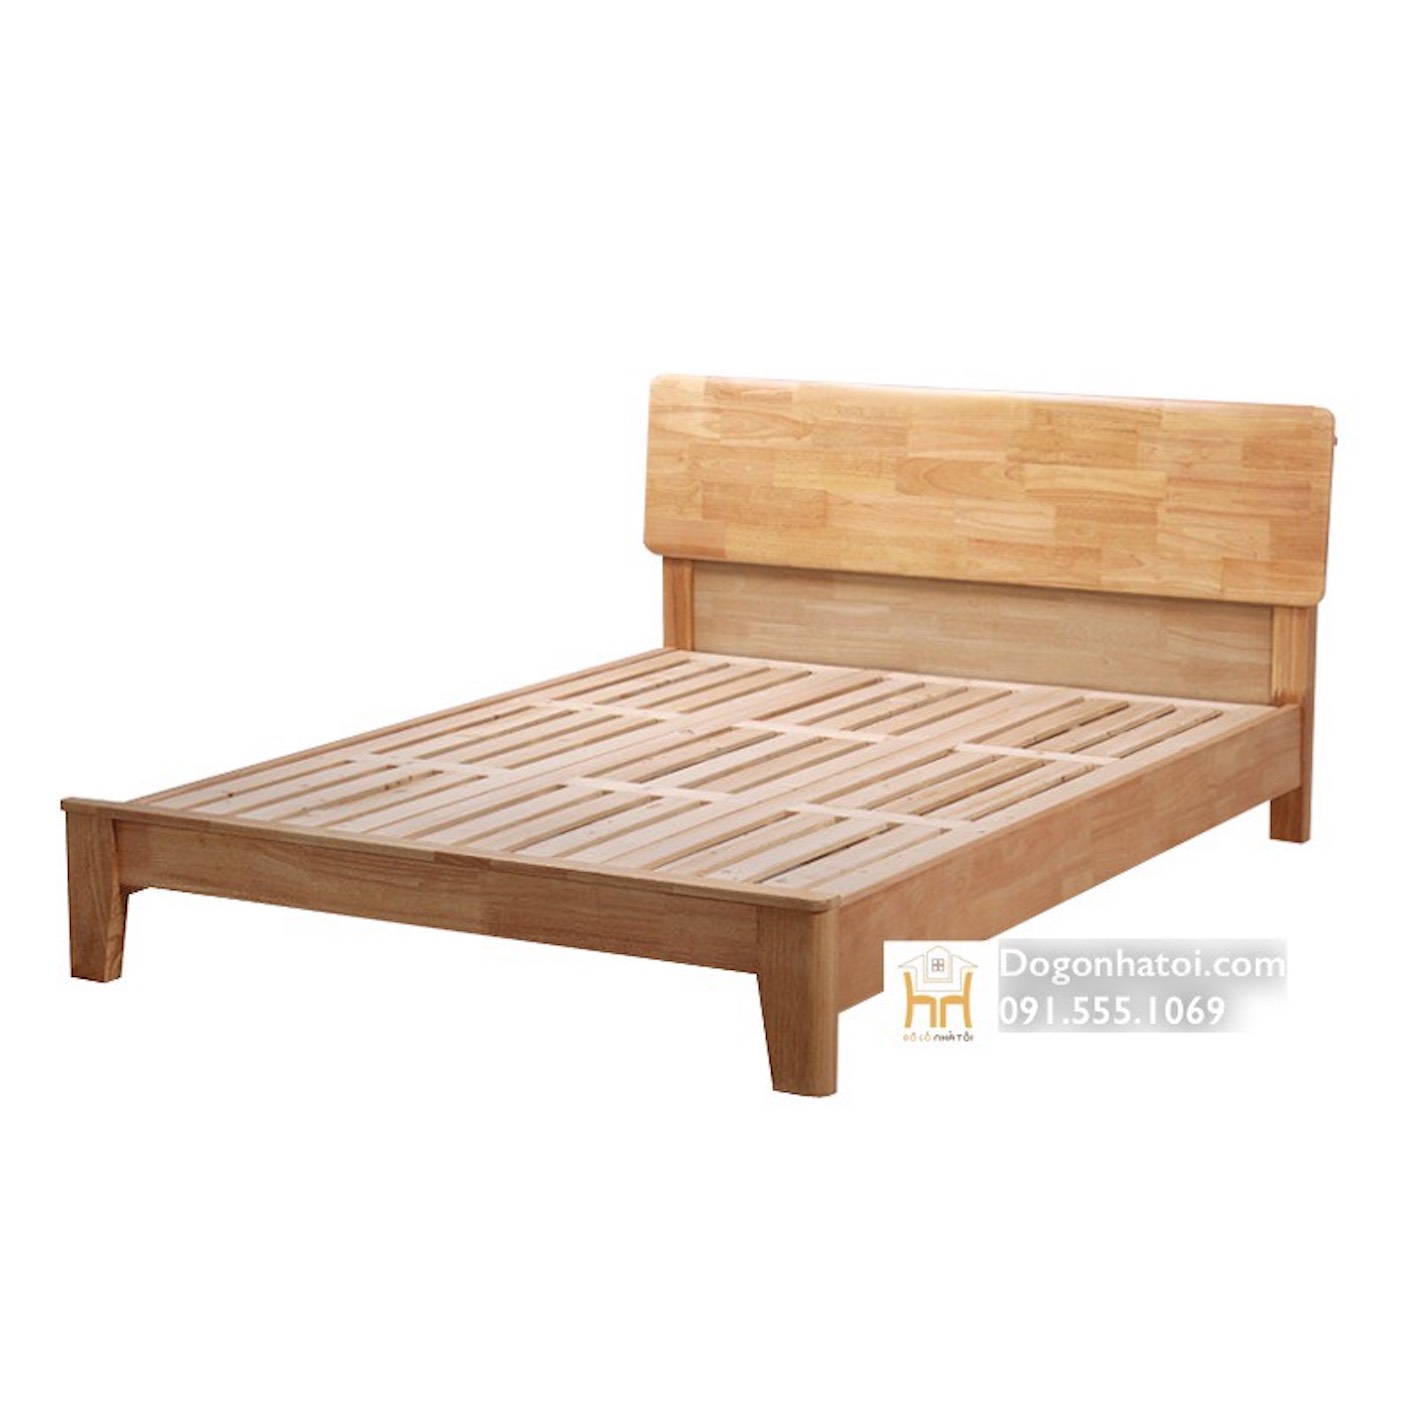 Mẫu giường gỗ sồi đẹp sơn màu tự nhiên kiểu hiện đại - GN624